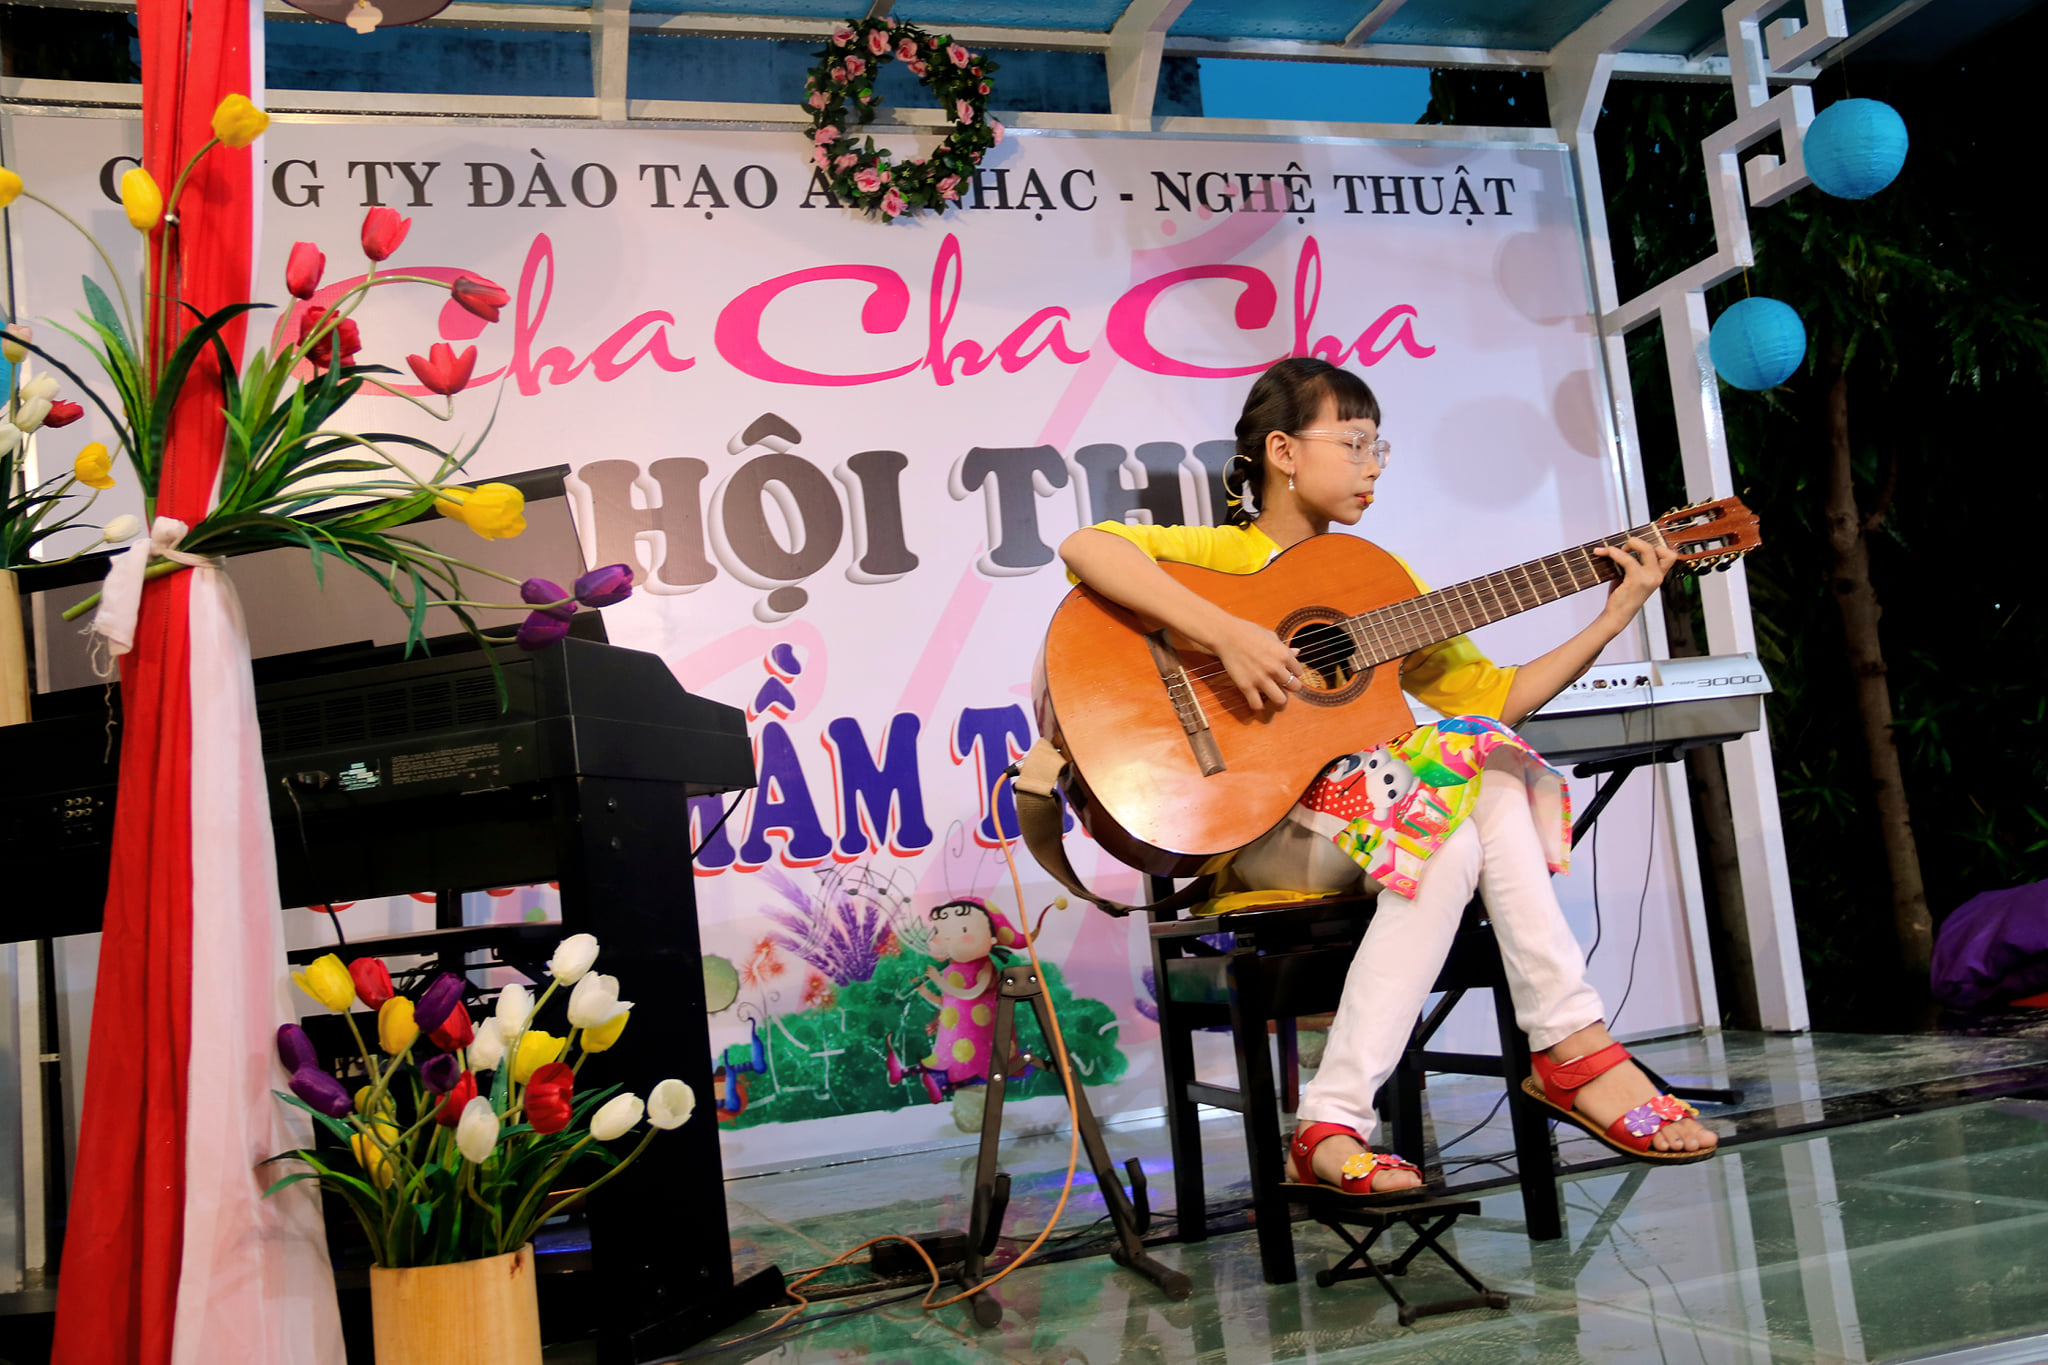 Khóa học guitar Gò Vấp tại ChaChaCha 1